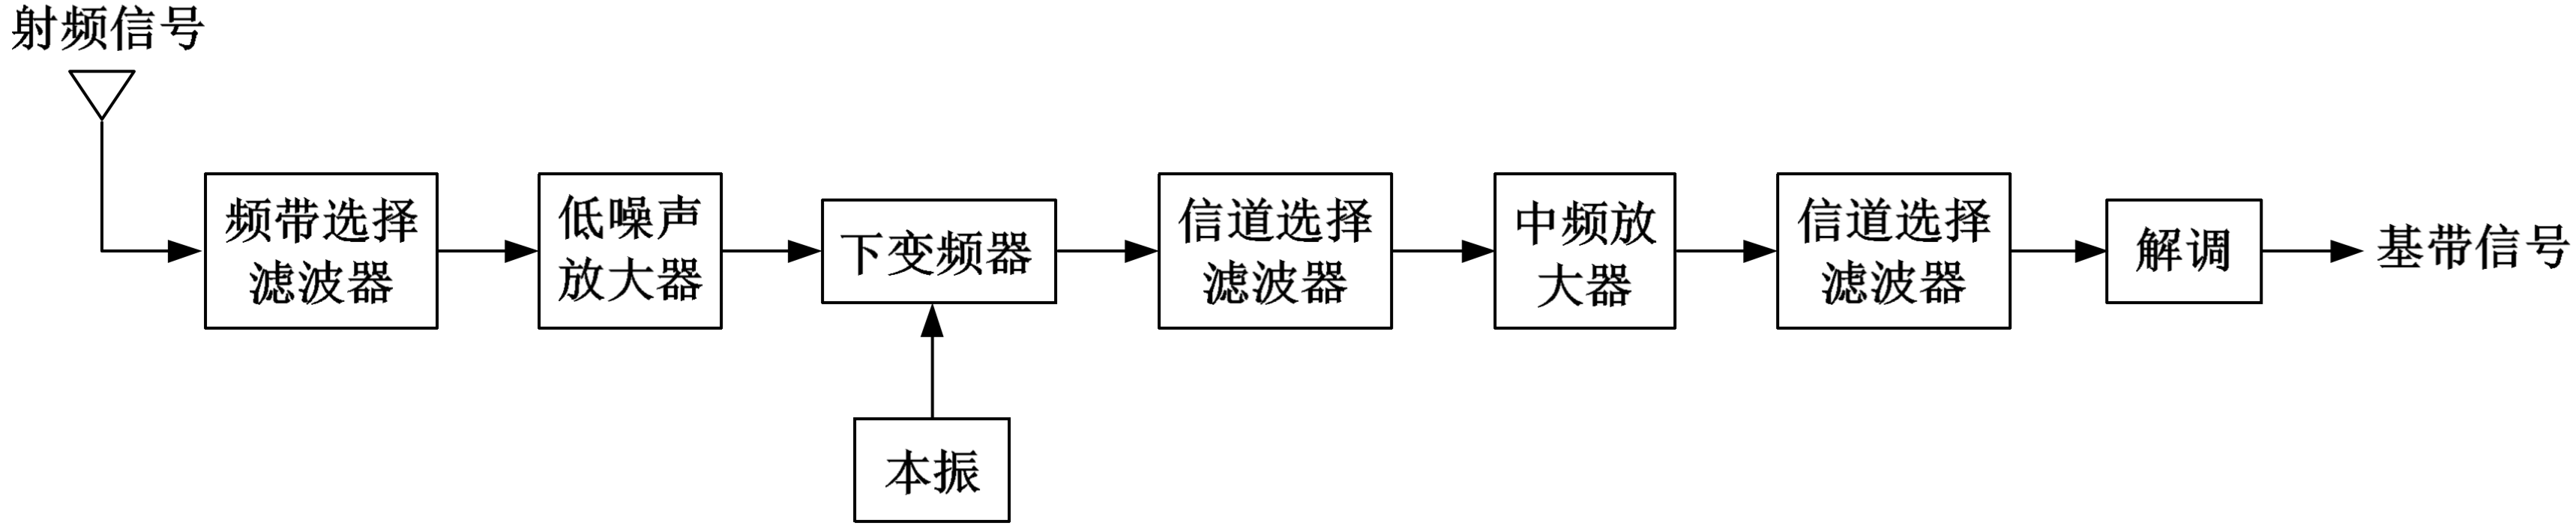 图 1.4 单次变频超外差式接收机射频前端的结构框图